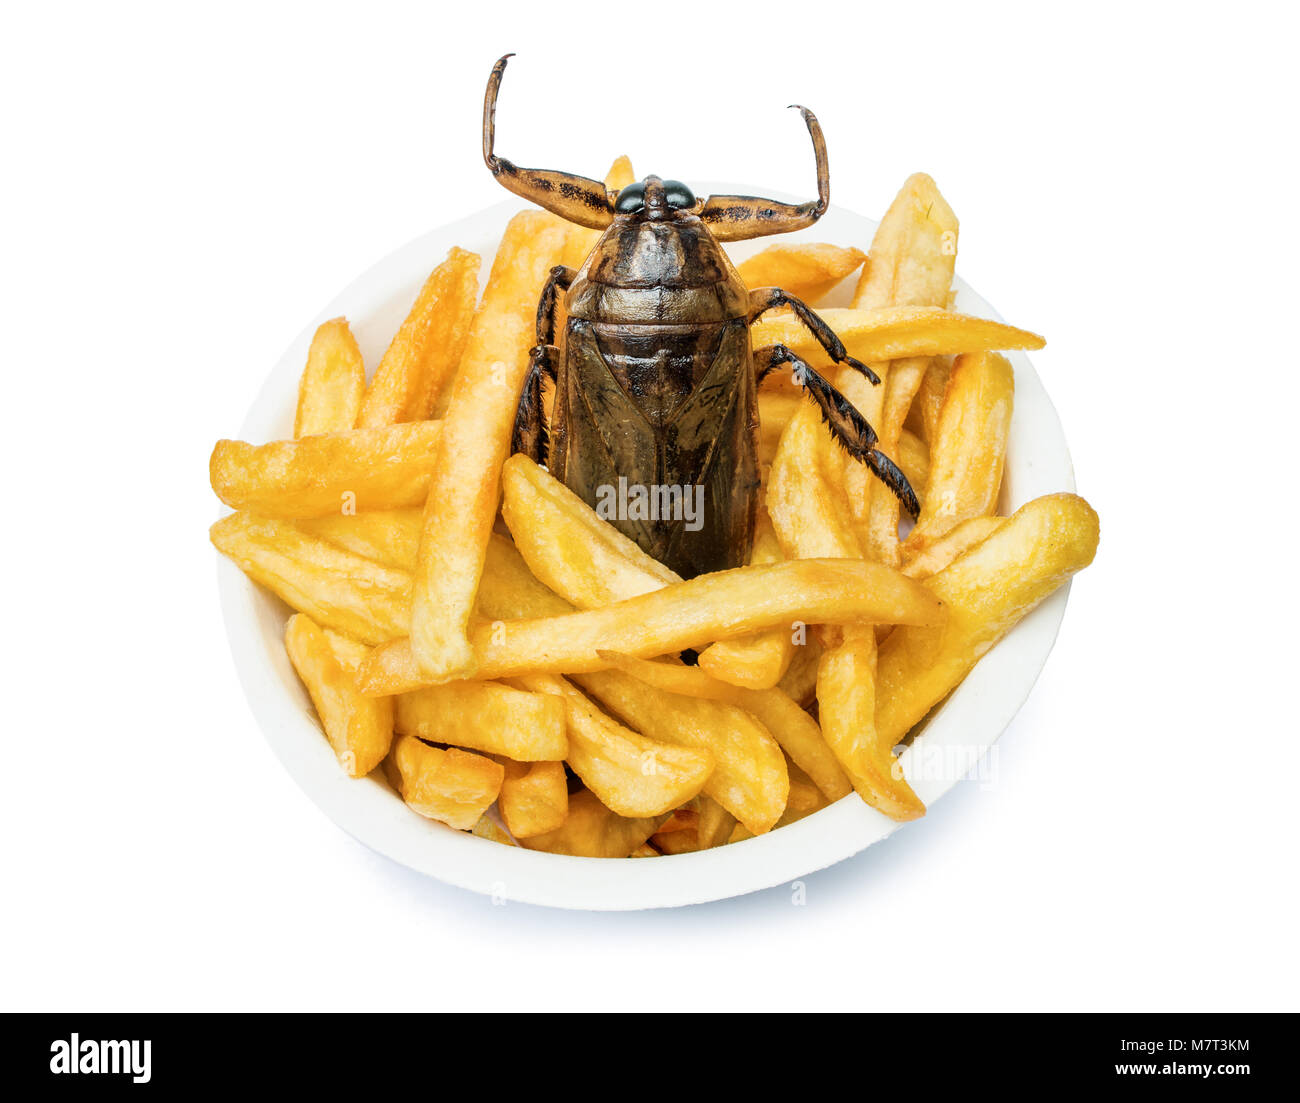 Oferta de comida rápida con insectos comestibles. Una cucaracha fritos con patatas fritas en la taza. Foto de stock